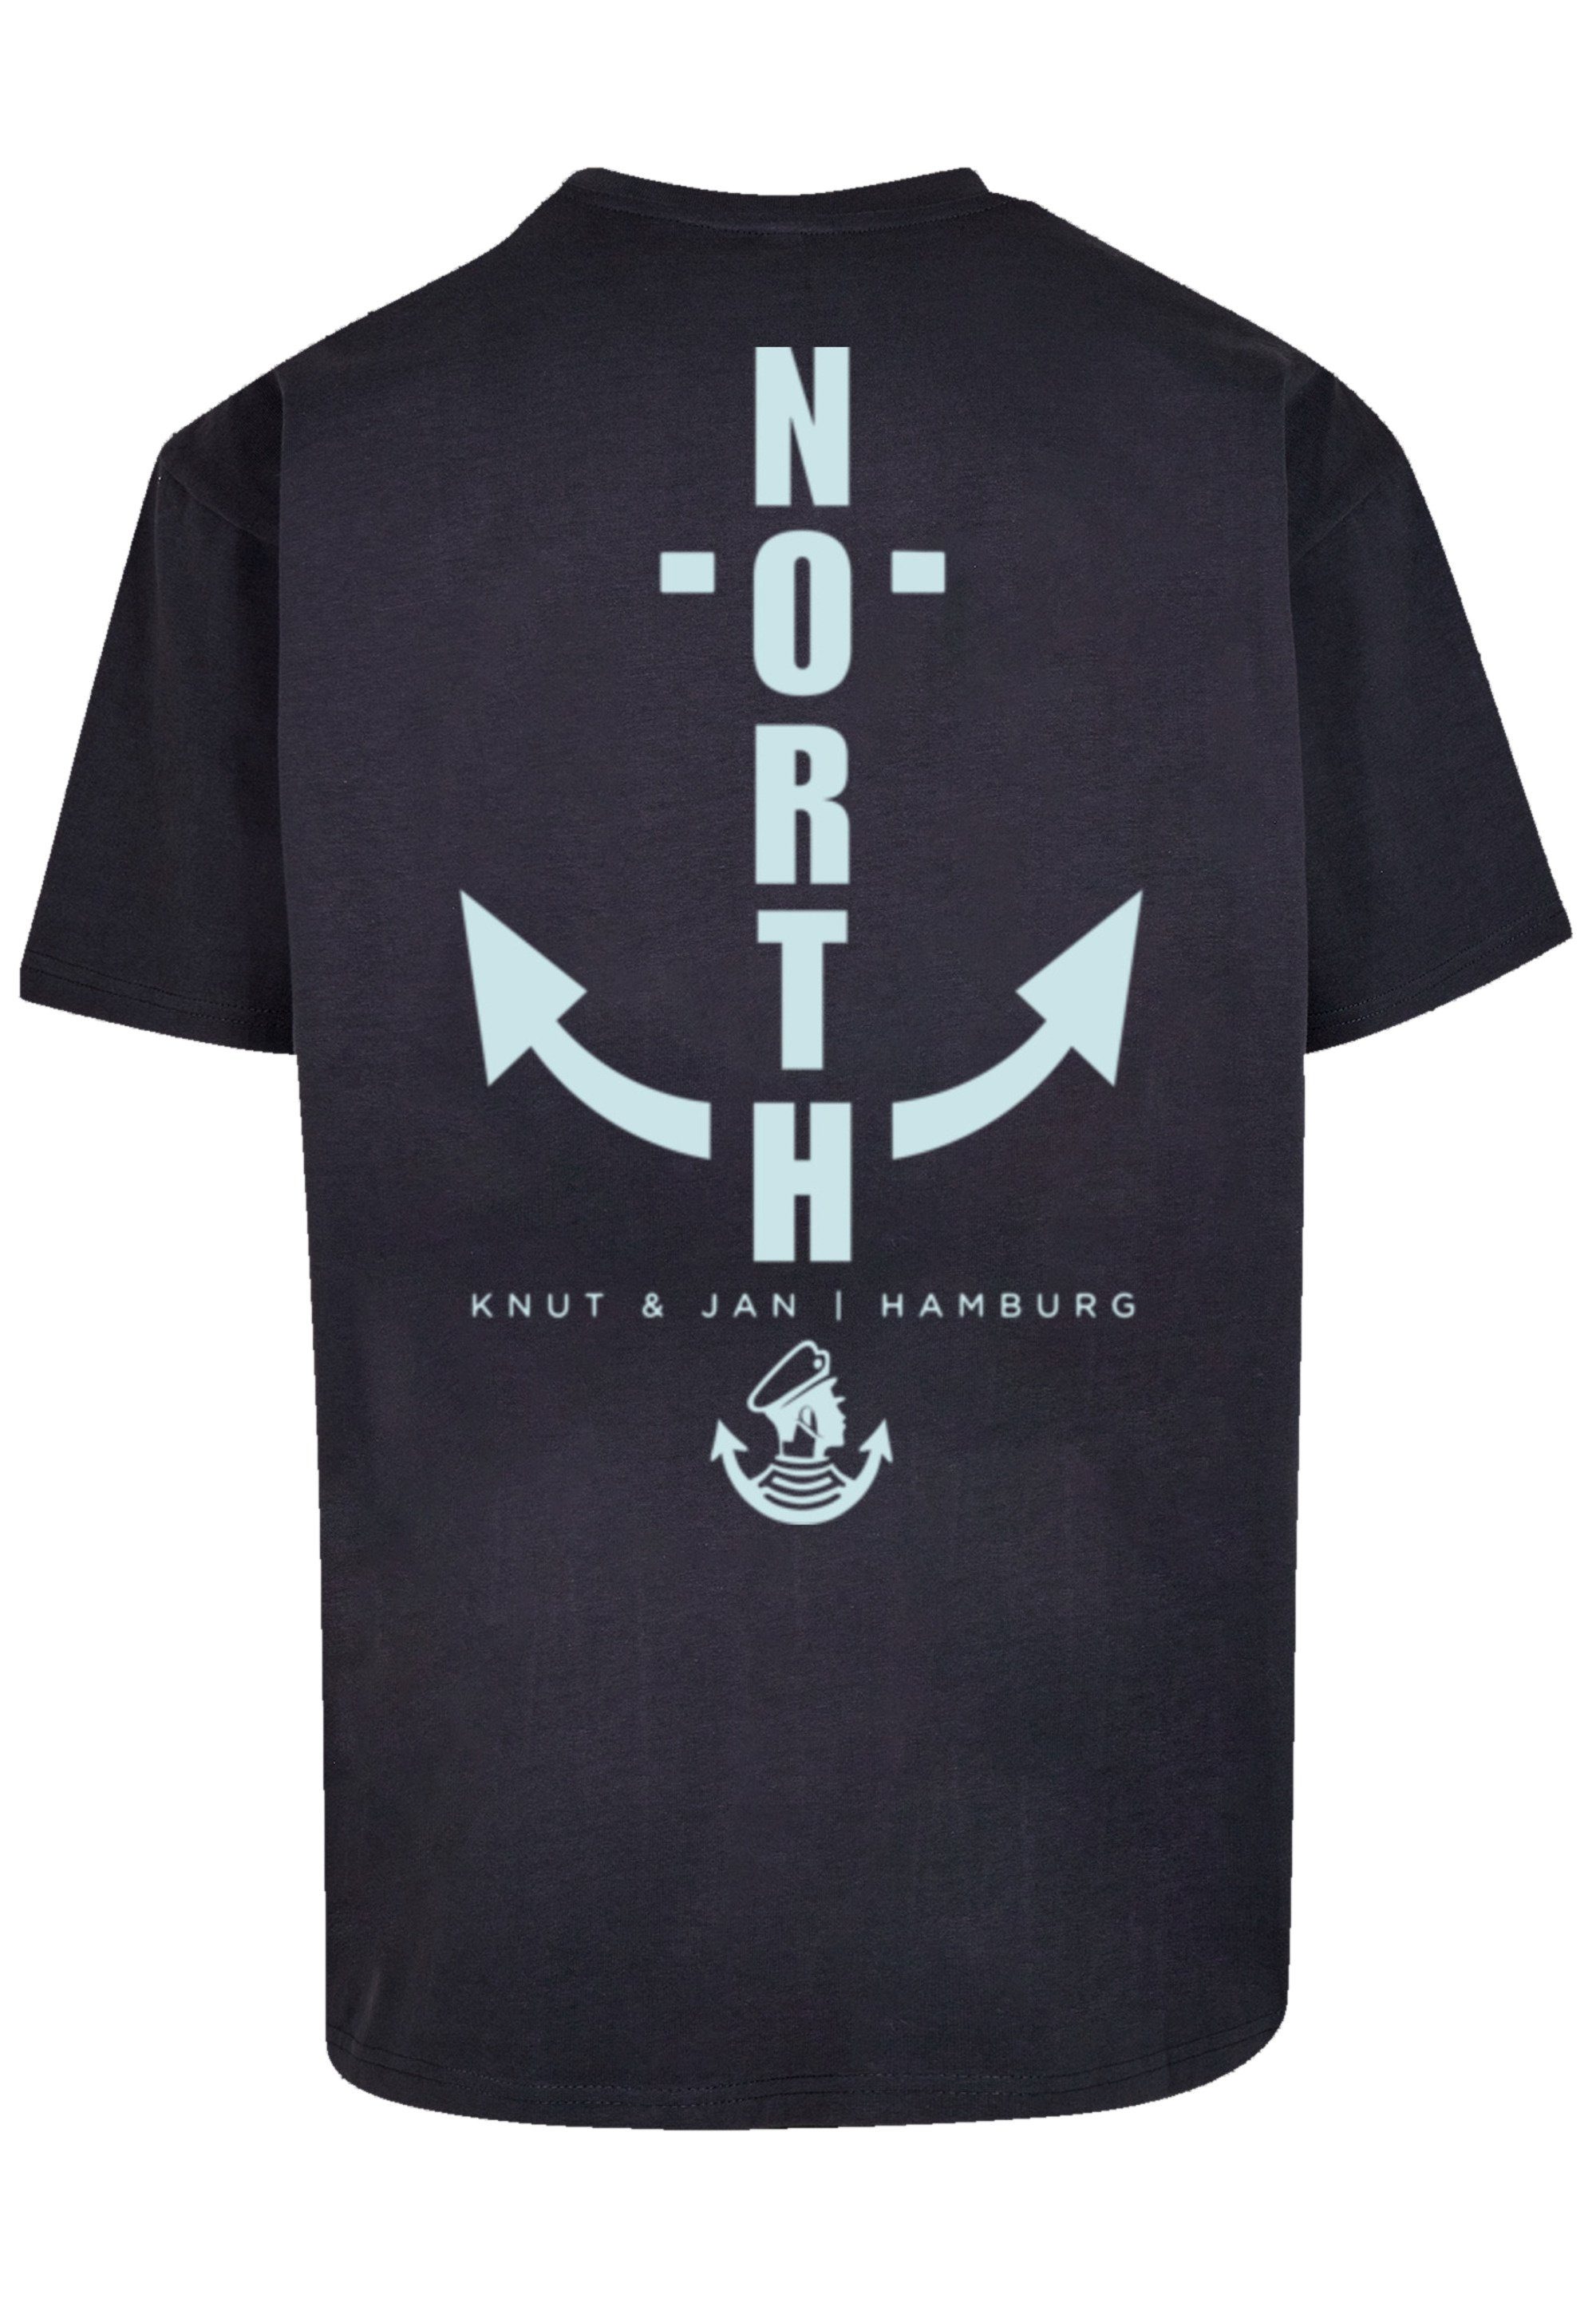 Hamburg T-Shirt Print F4NT4STIC Anker navy & Jan North Knut